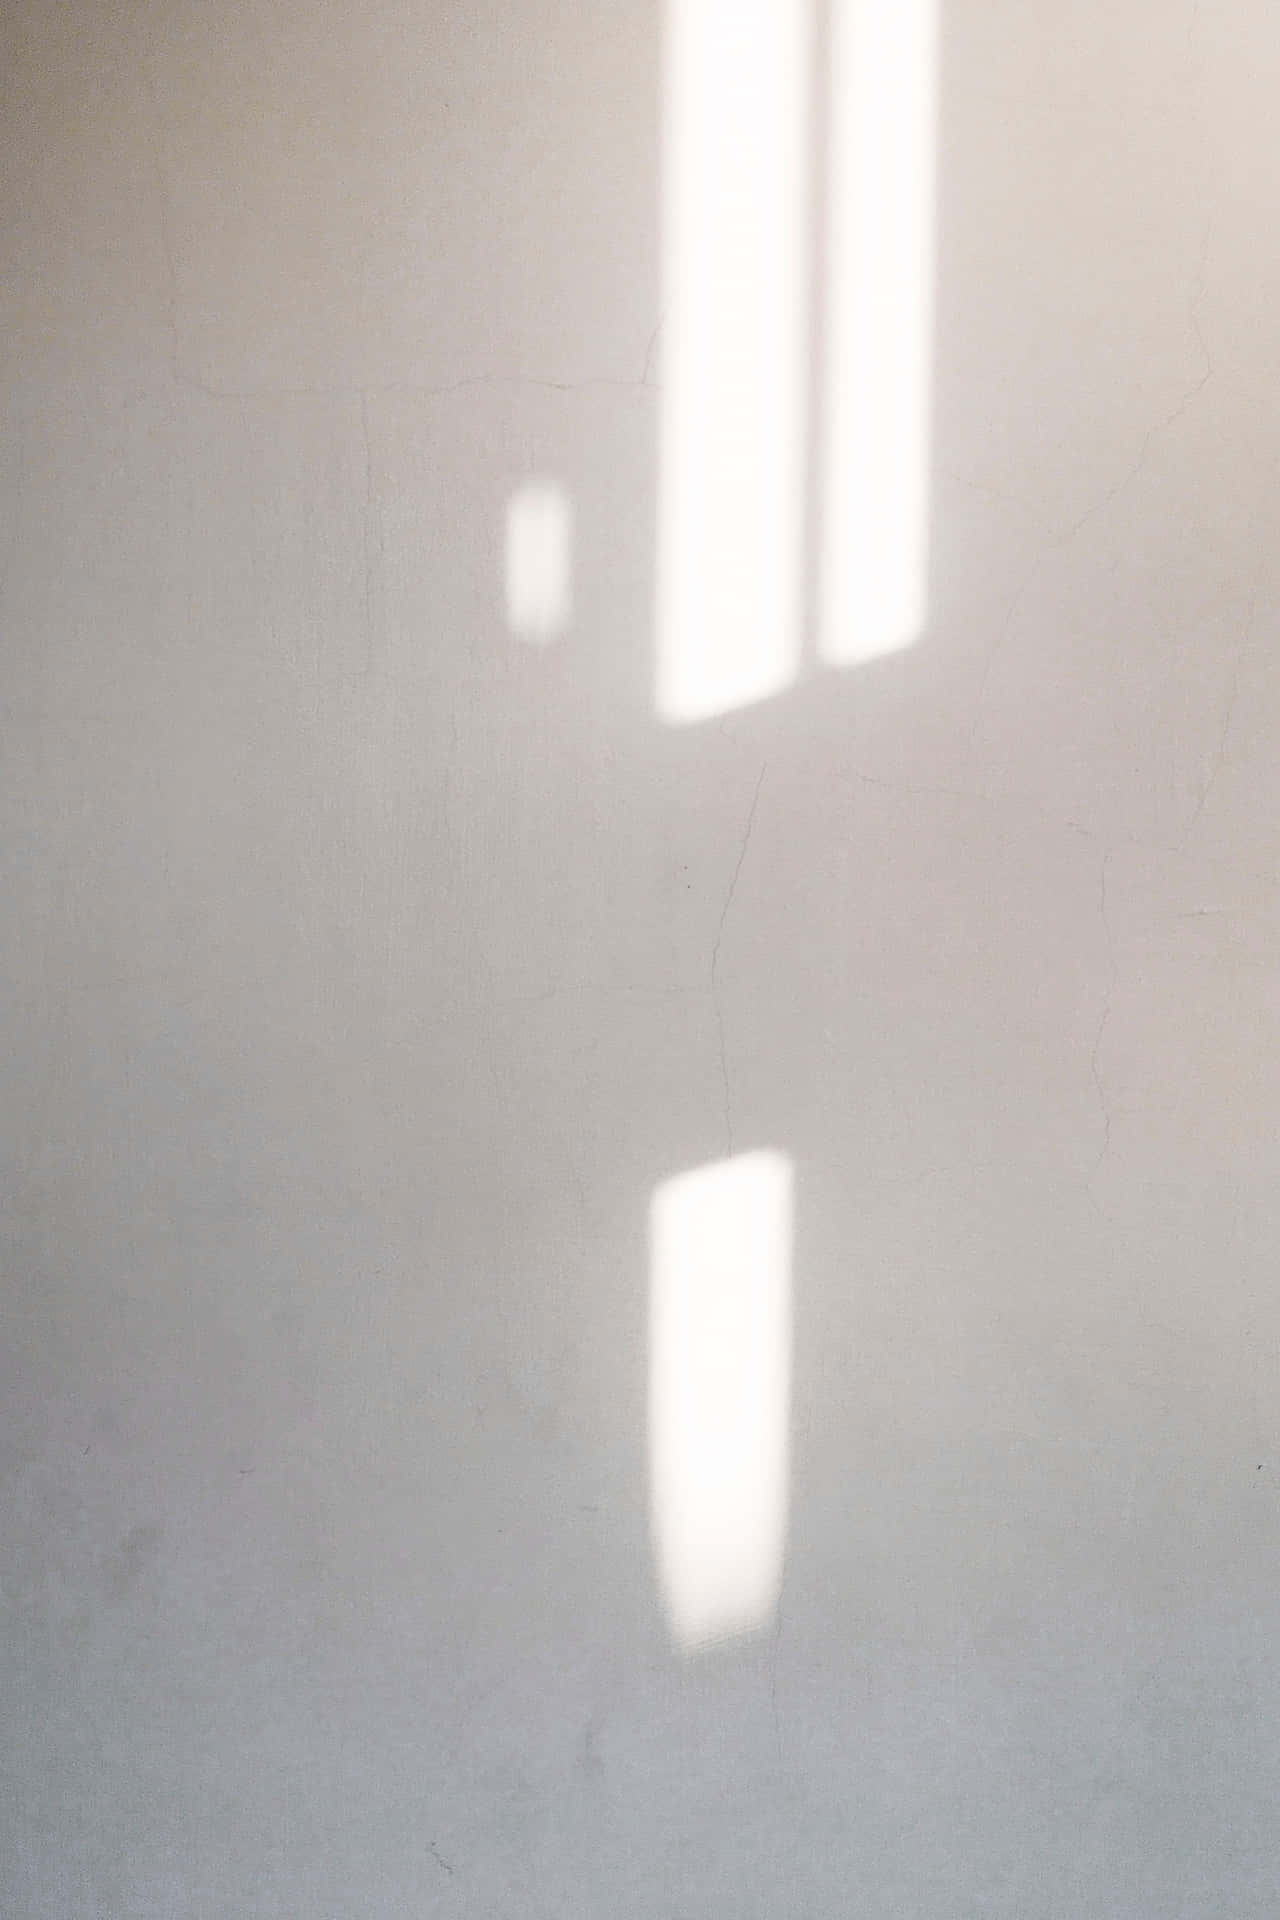 Hvid væg baggrund med sollys mønster